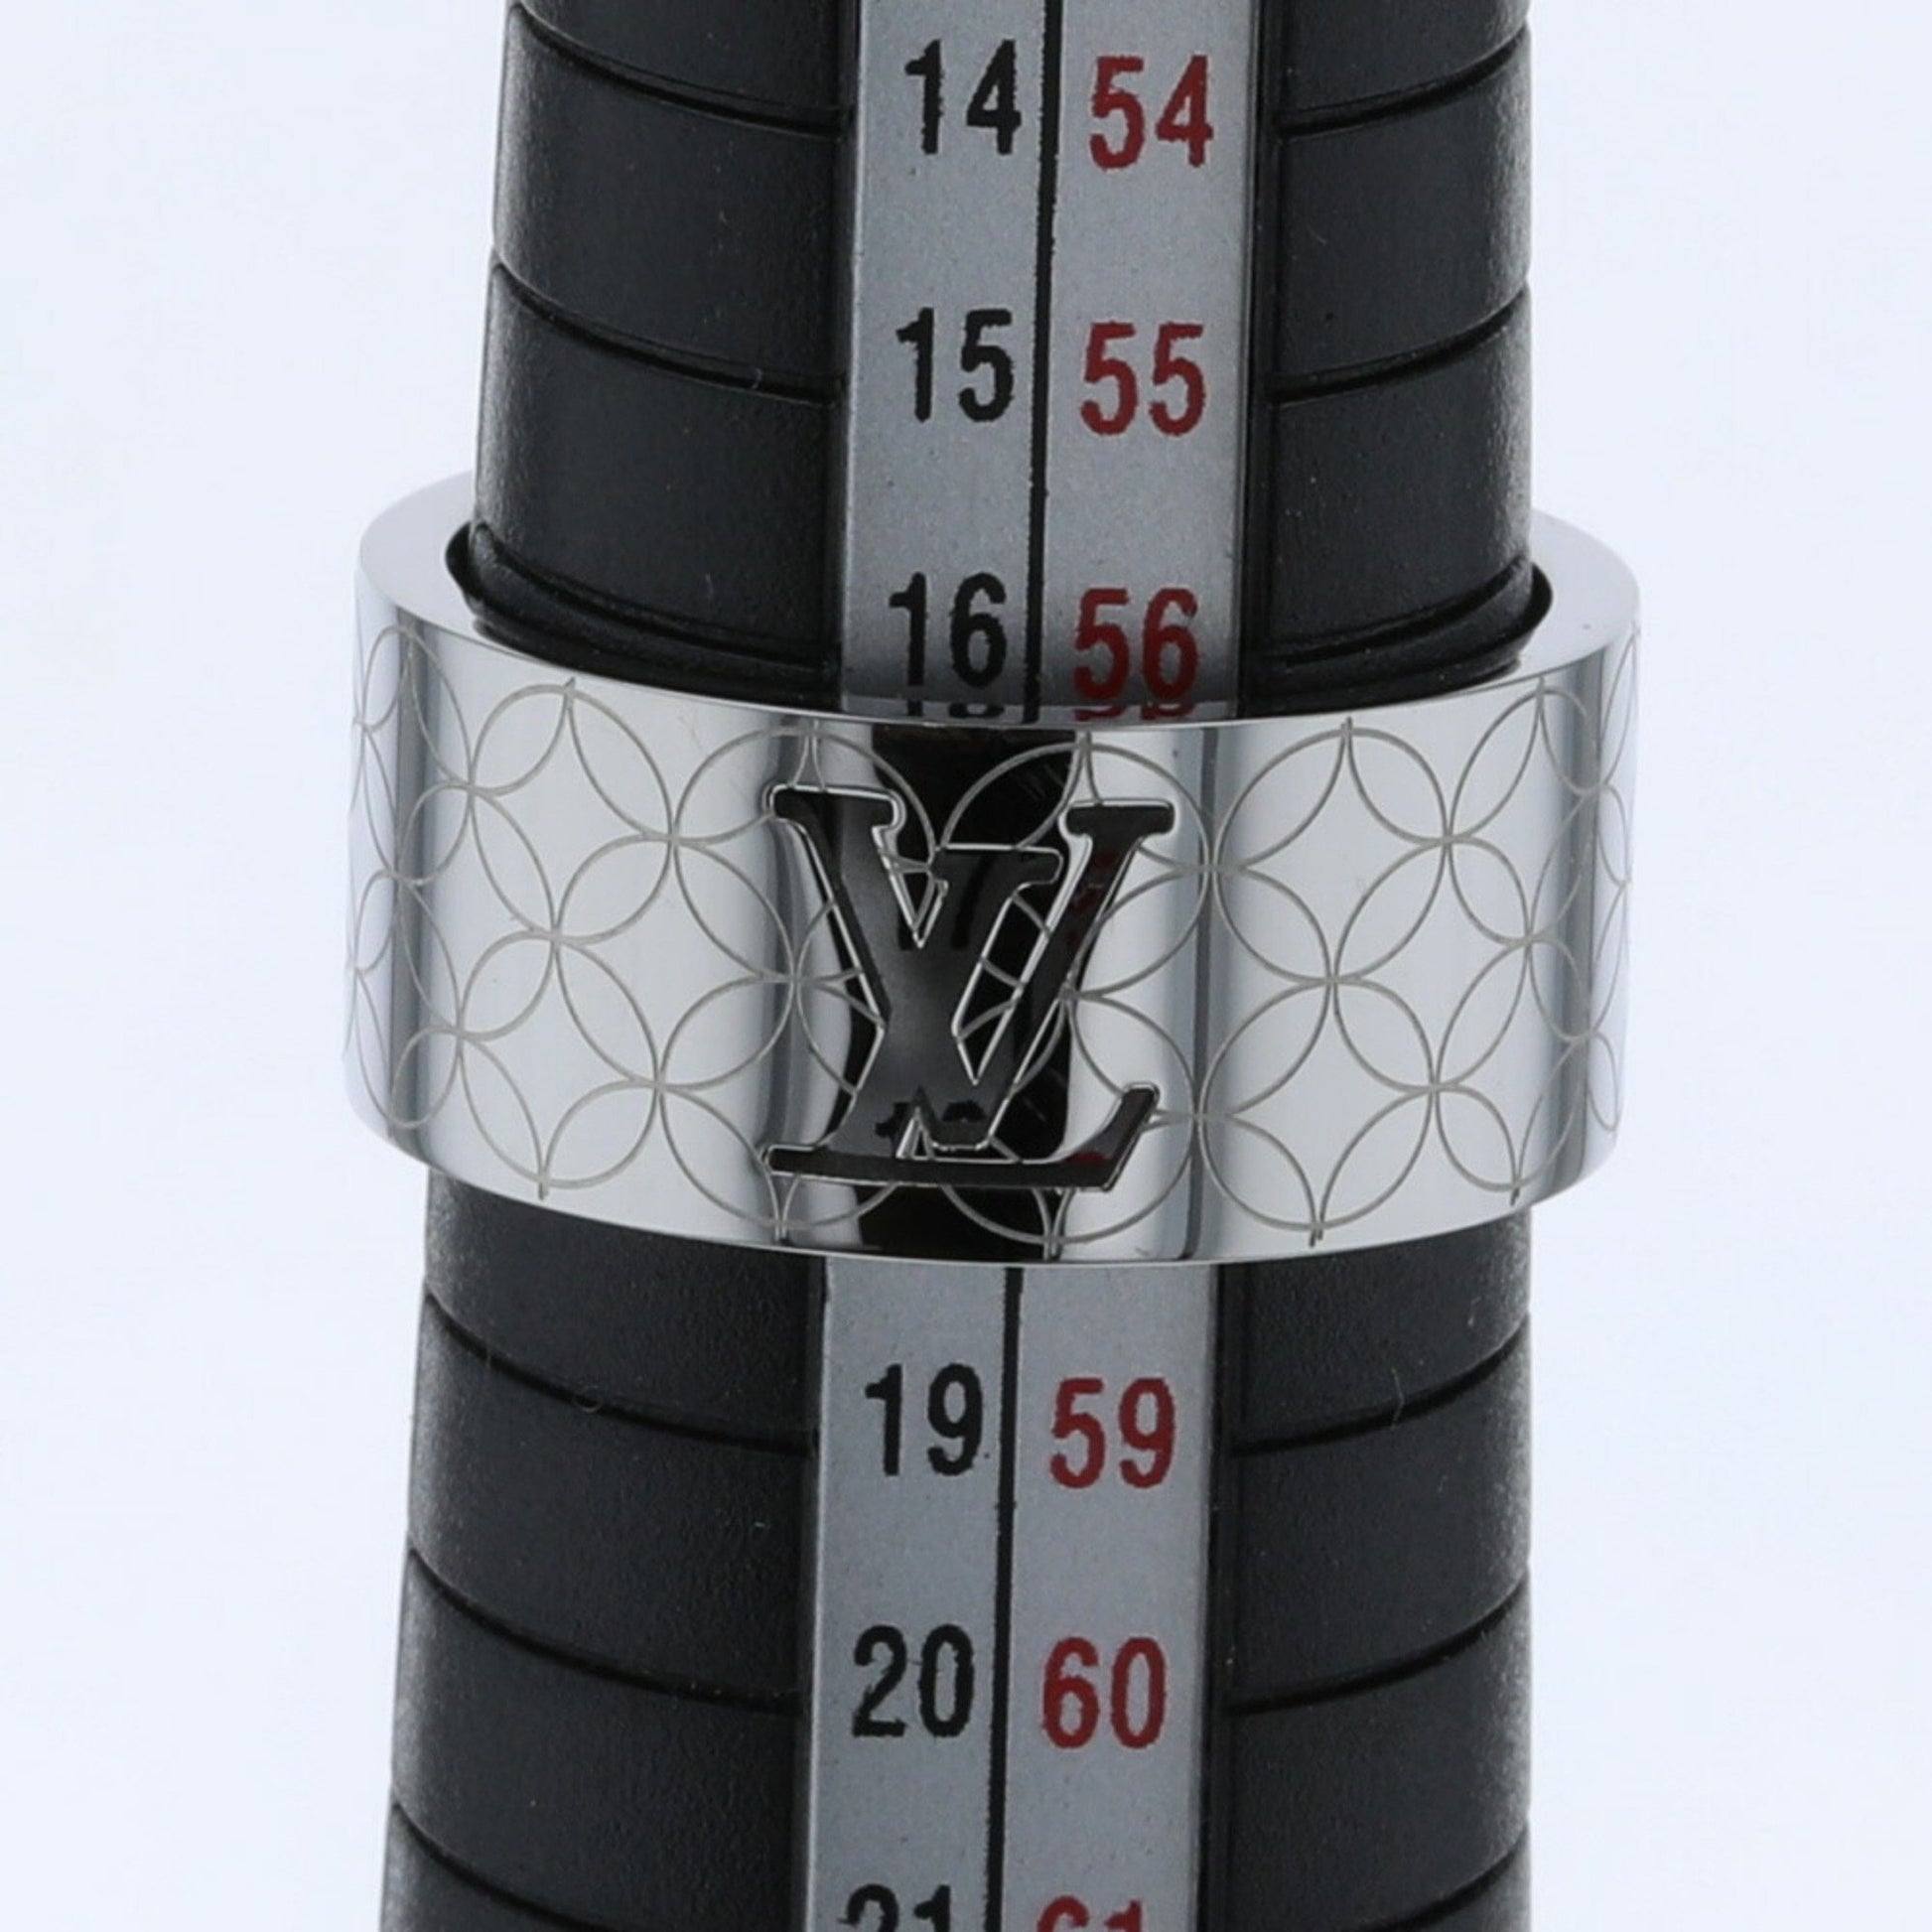 Louis Vuitton Champs-Elysées Logo Cut-out Textured Silver Tone Band Ring  Size 60 Louis Vuitton